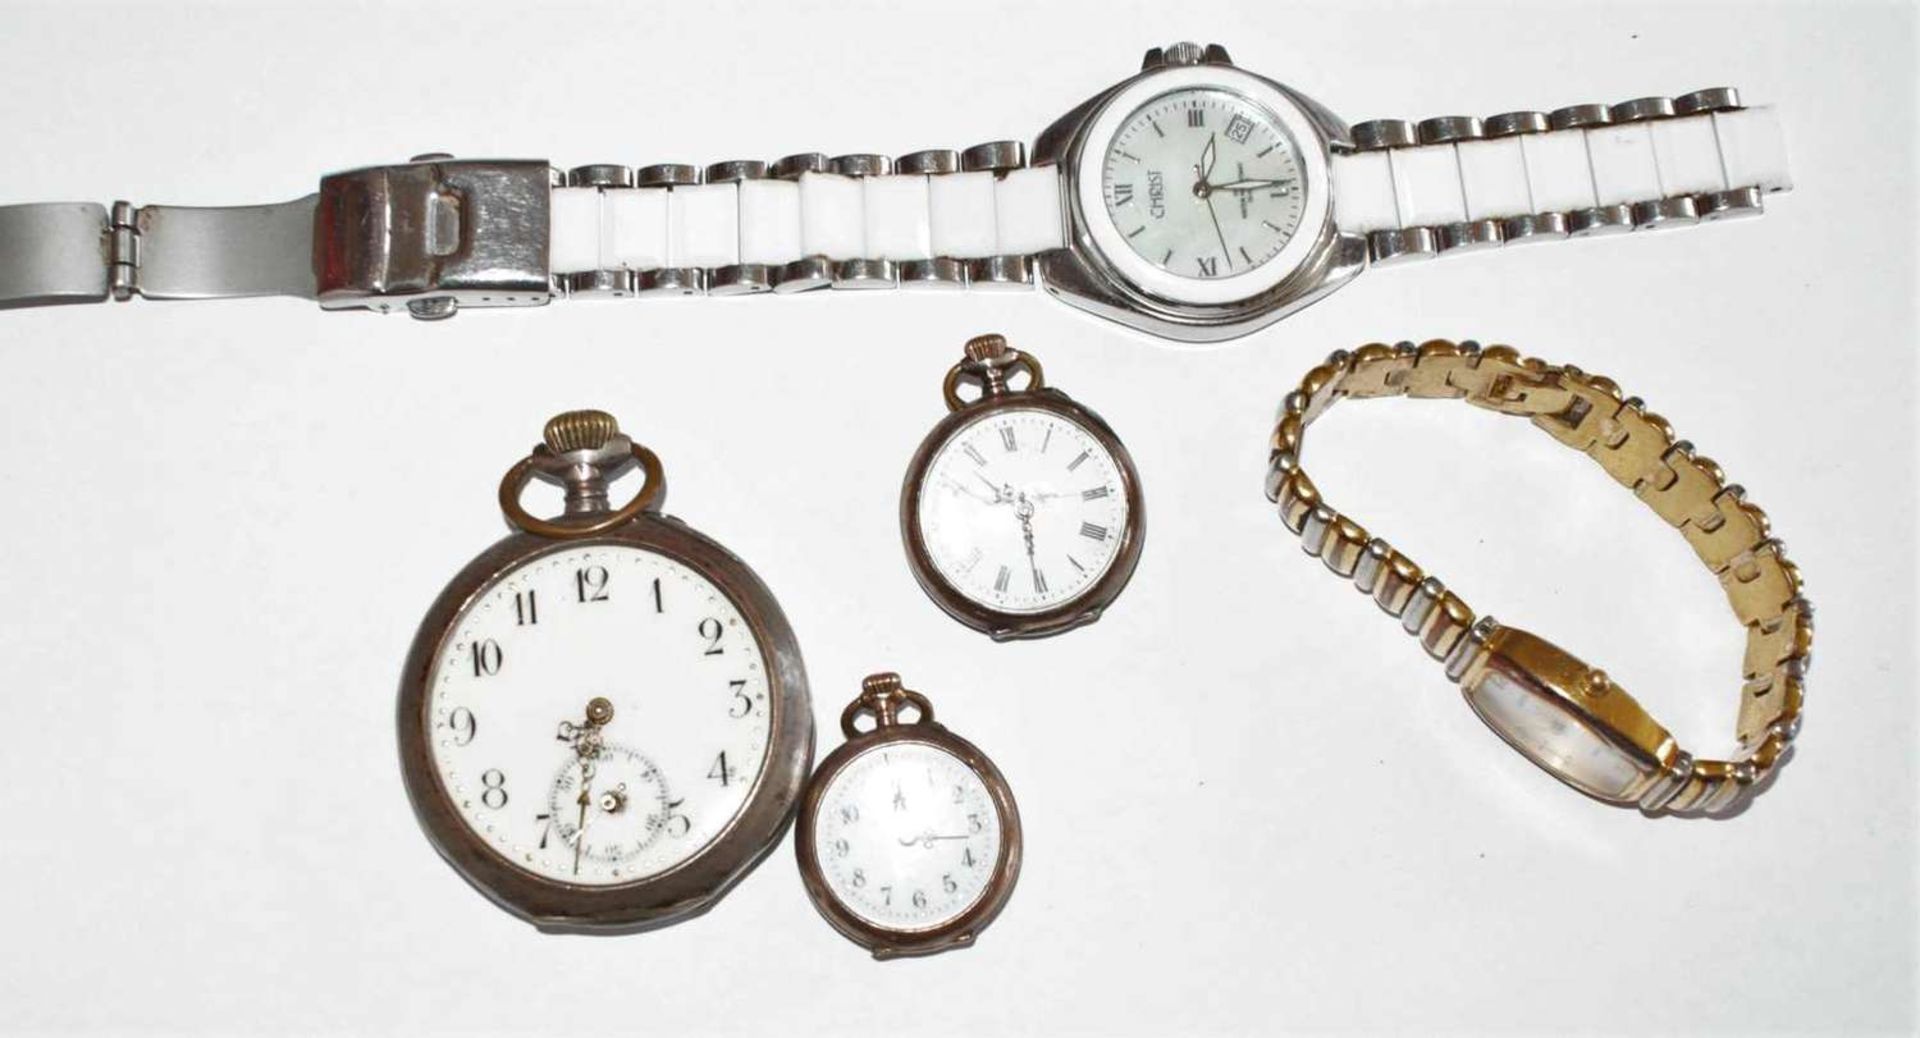 From dissolution - Bastellot watches, 3 pocket watches, etc. Partly silverAus Auflösung -